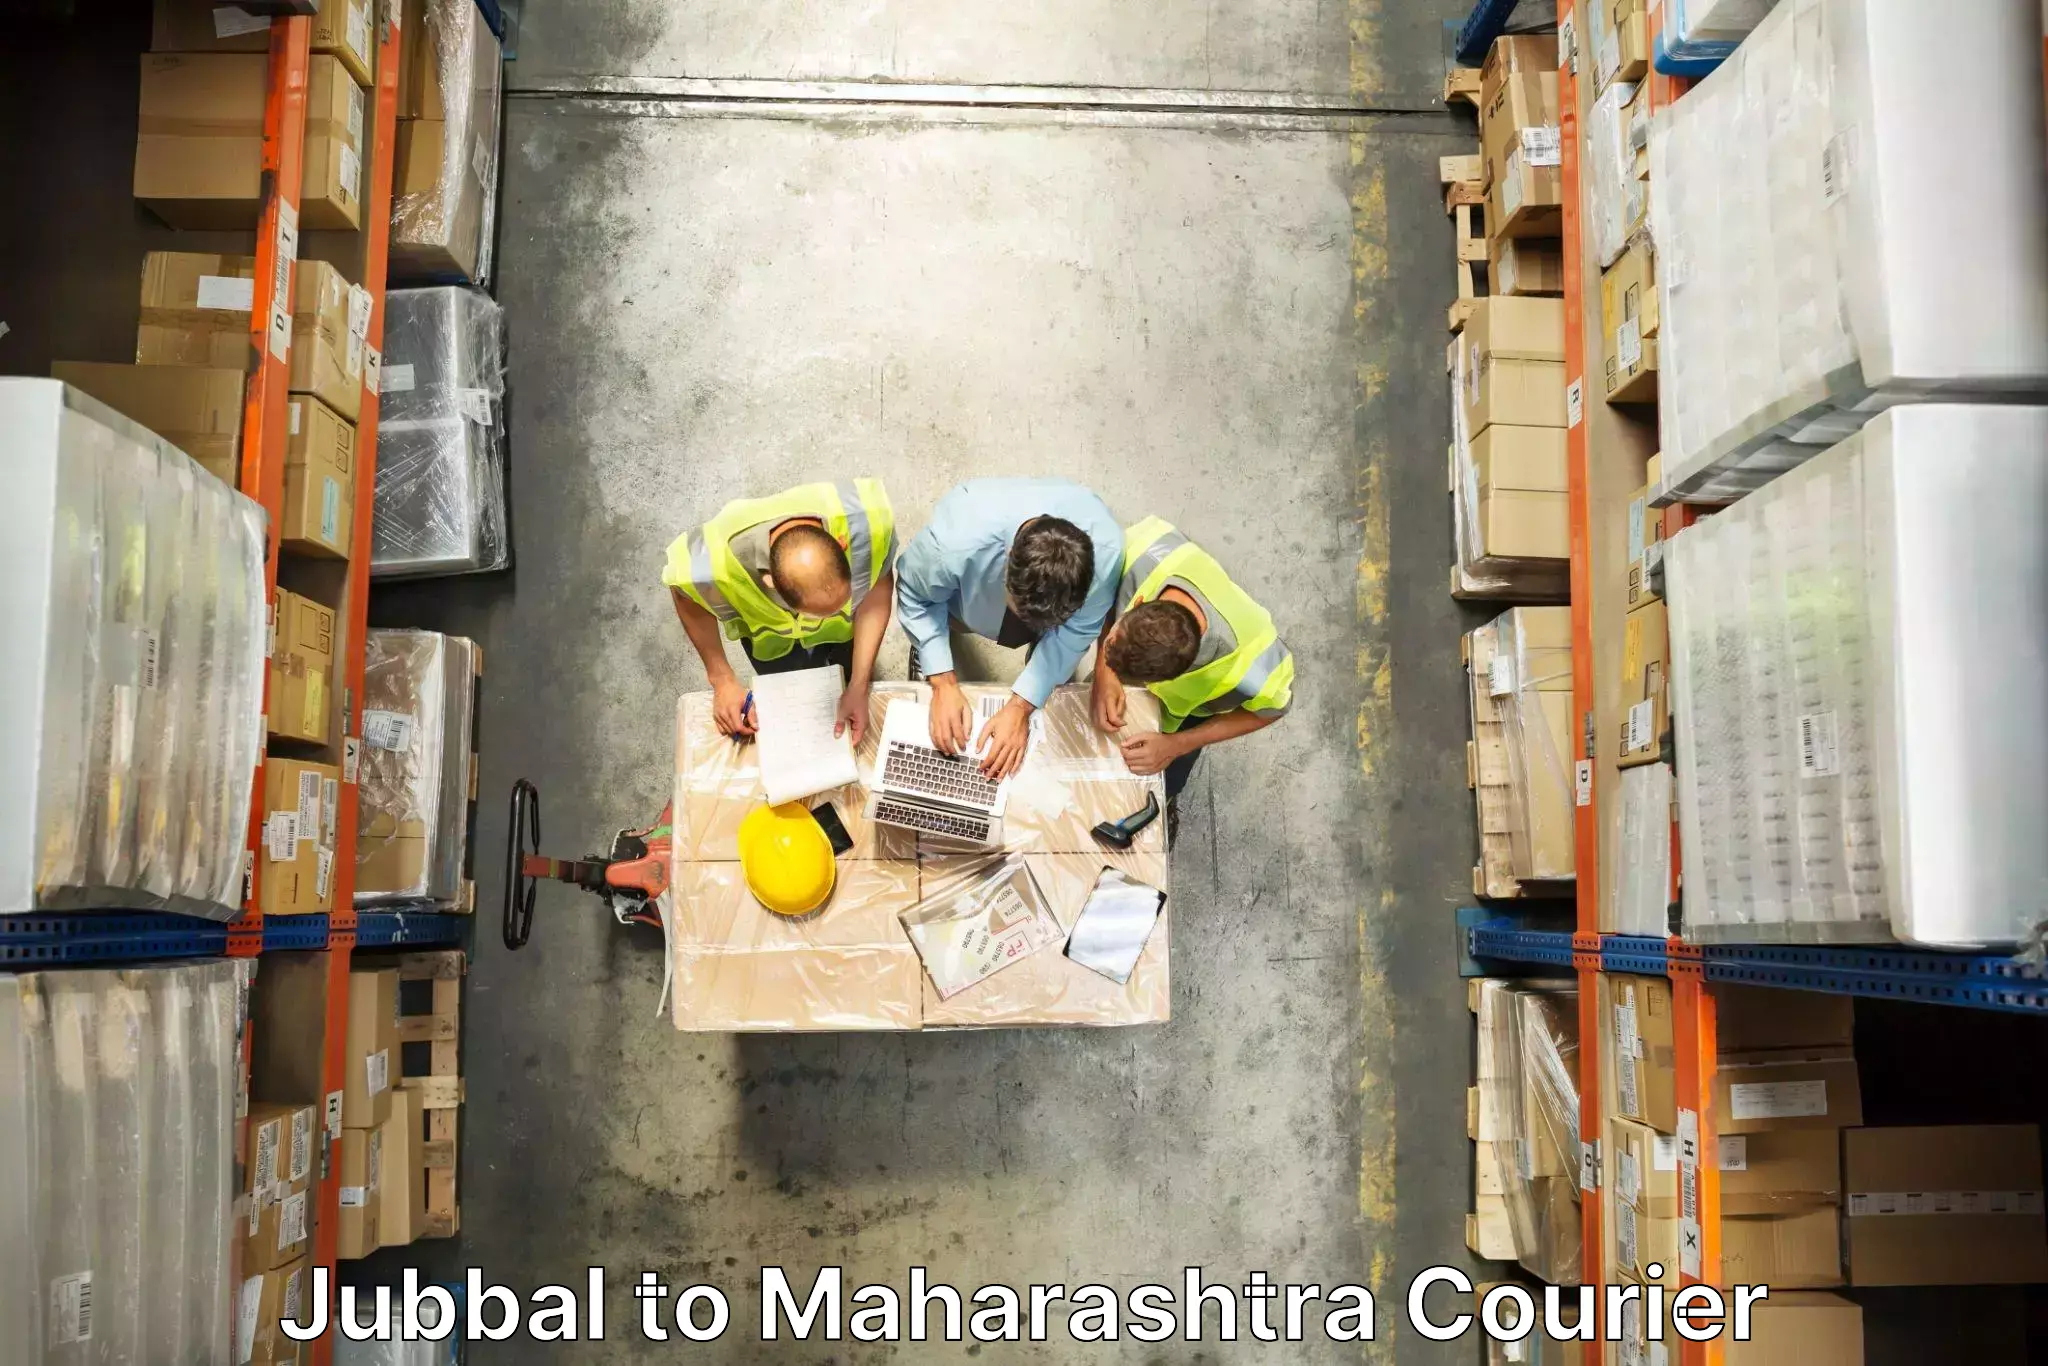 Specialized moving company Jubbal to Maharashtra